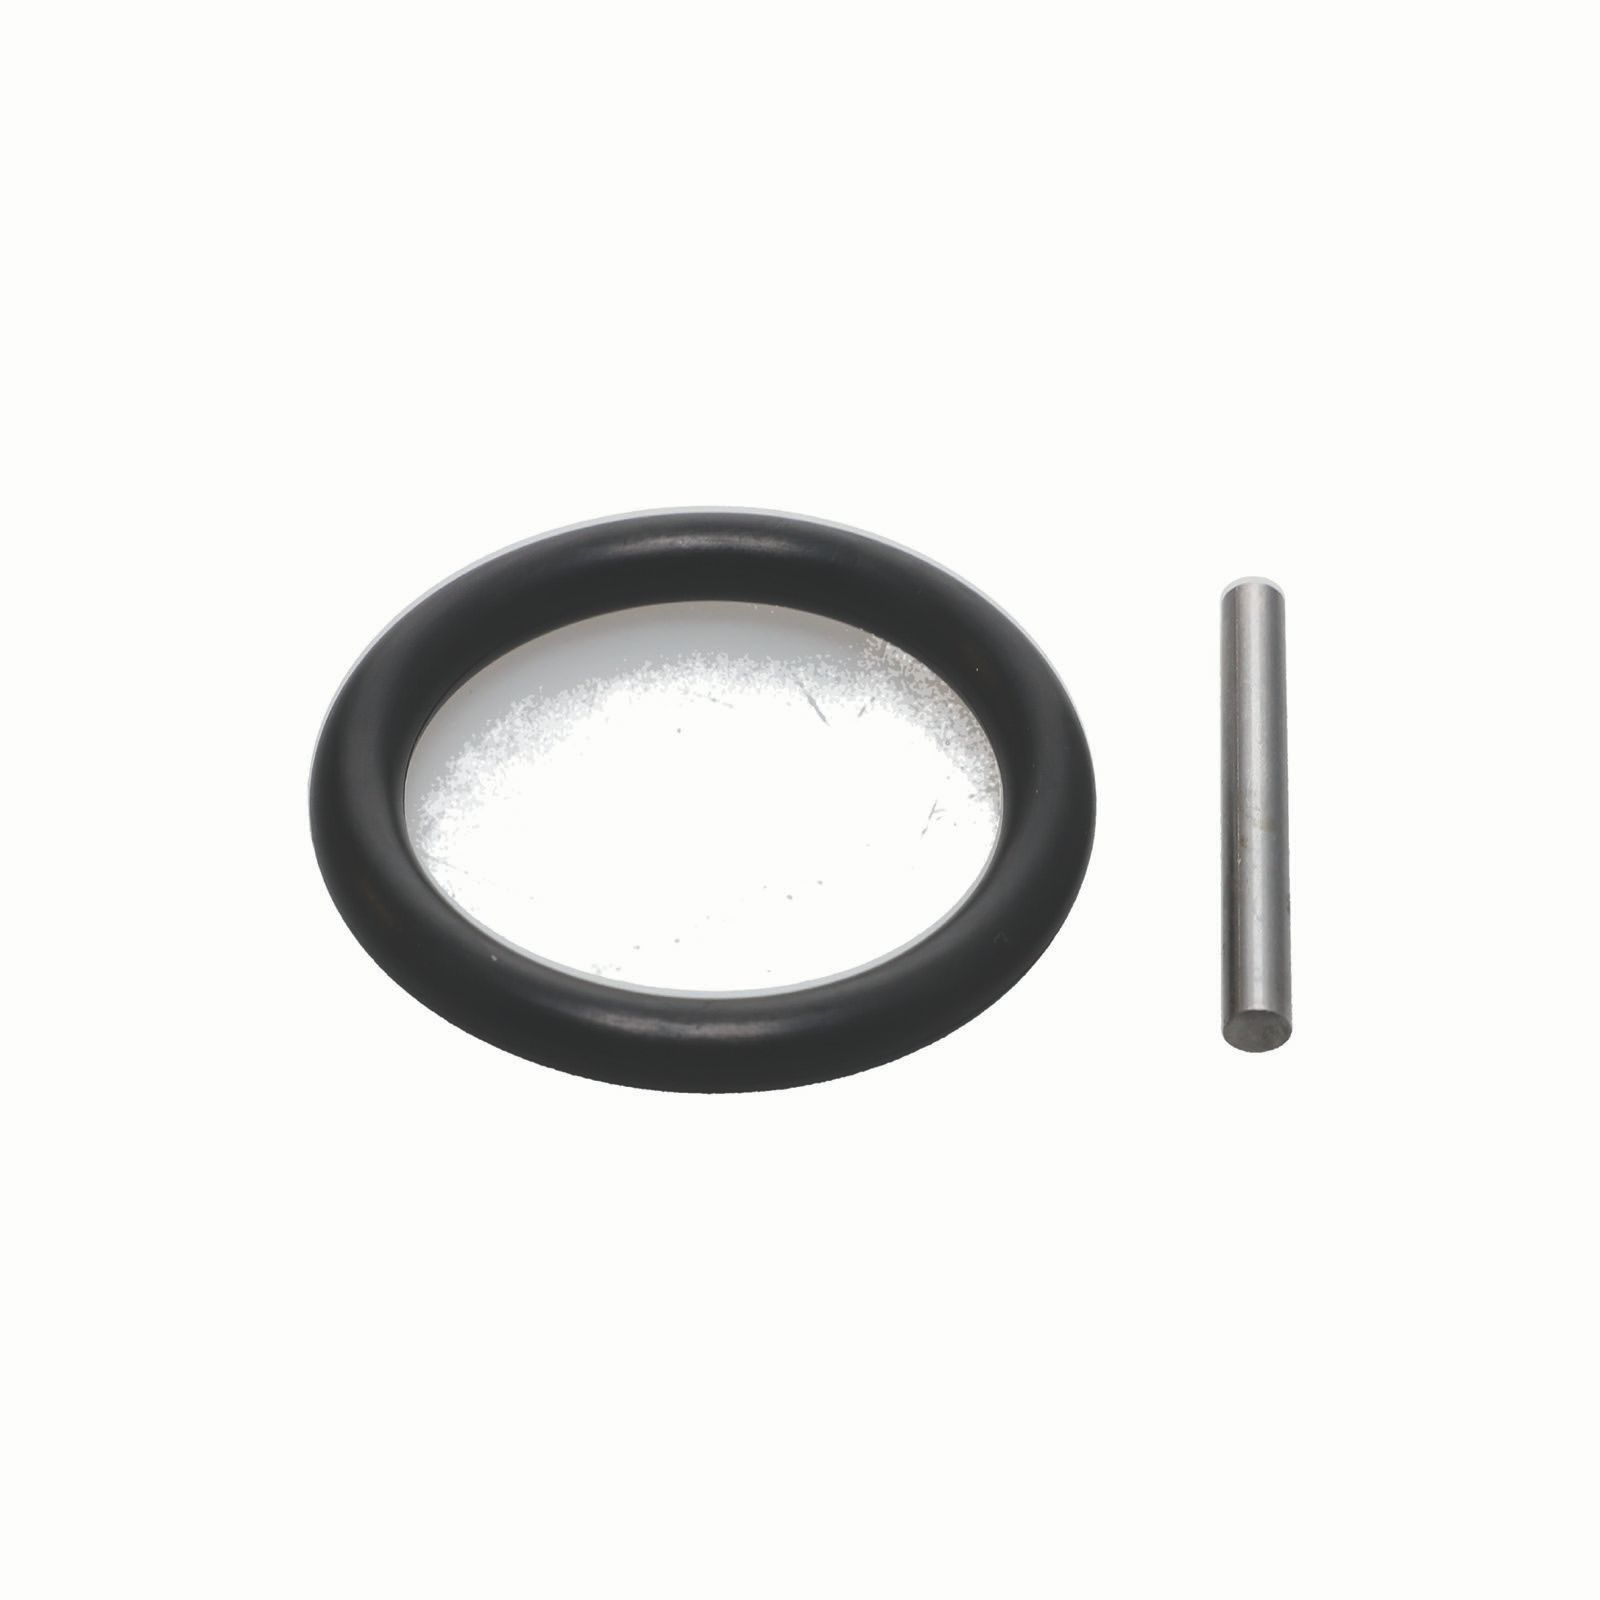 Pin and O-ring set-SQ1 foto de producto